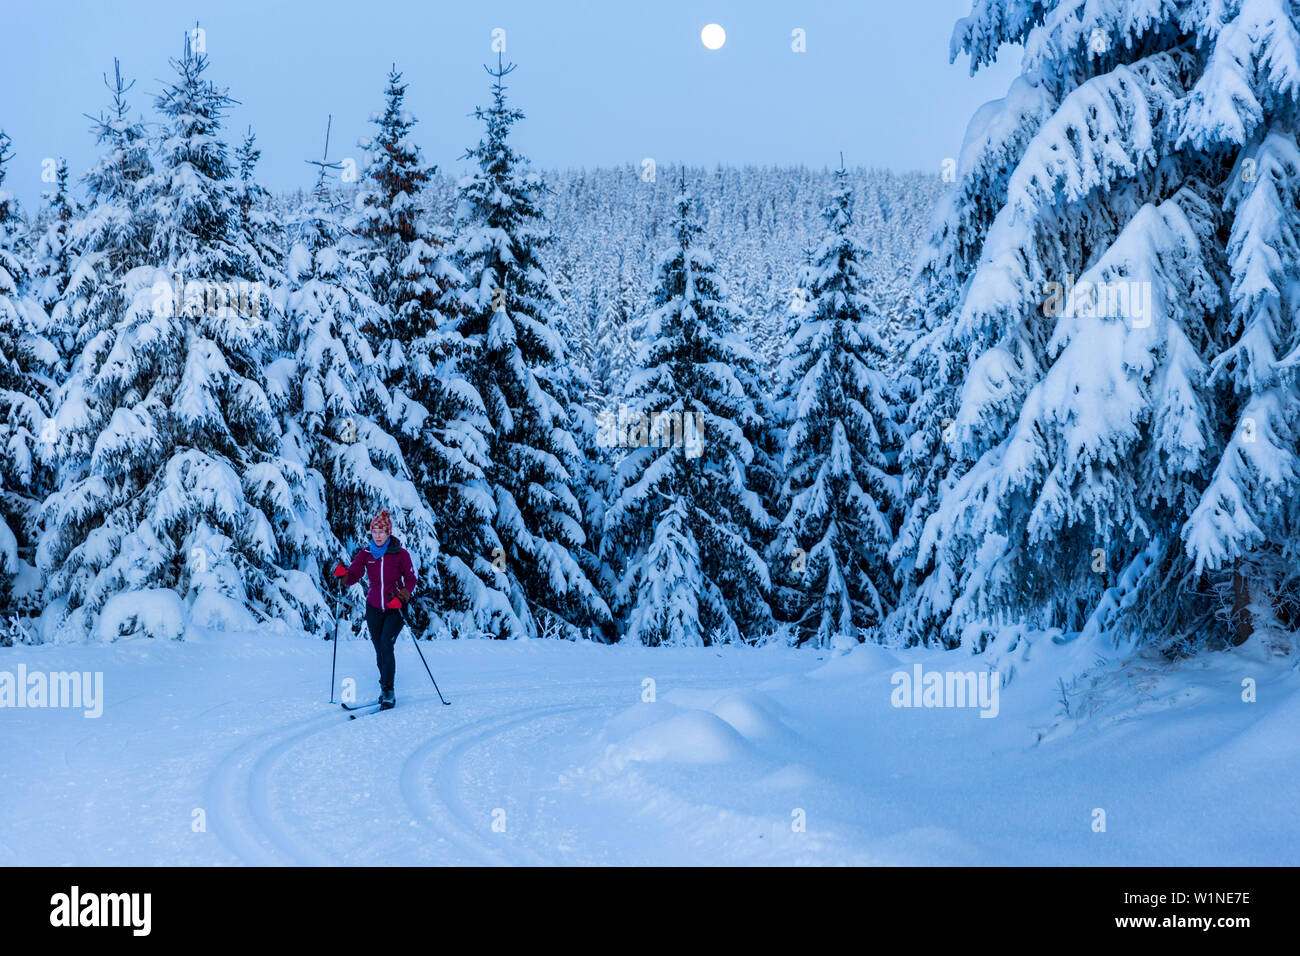 Les femmes dans une forêt d'hiver ski alpin, ski de fond à la pleine lune, Paysage d'hiver, sapins couverts de neige, hiver, Harz, M., Saint Andre Banque D'Images